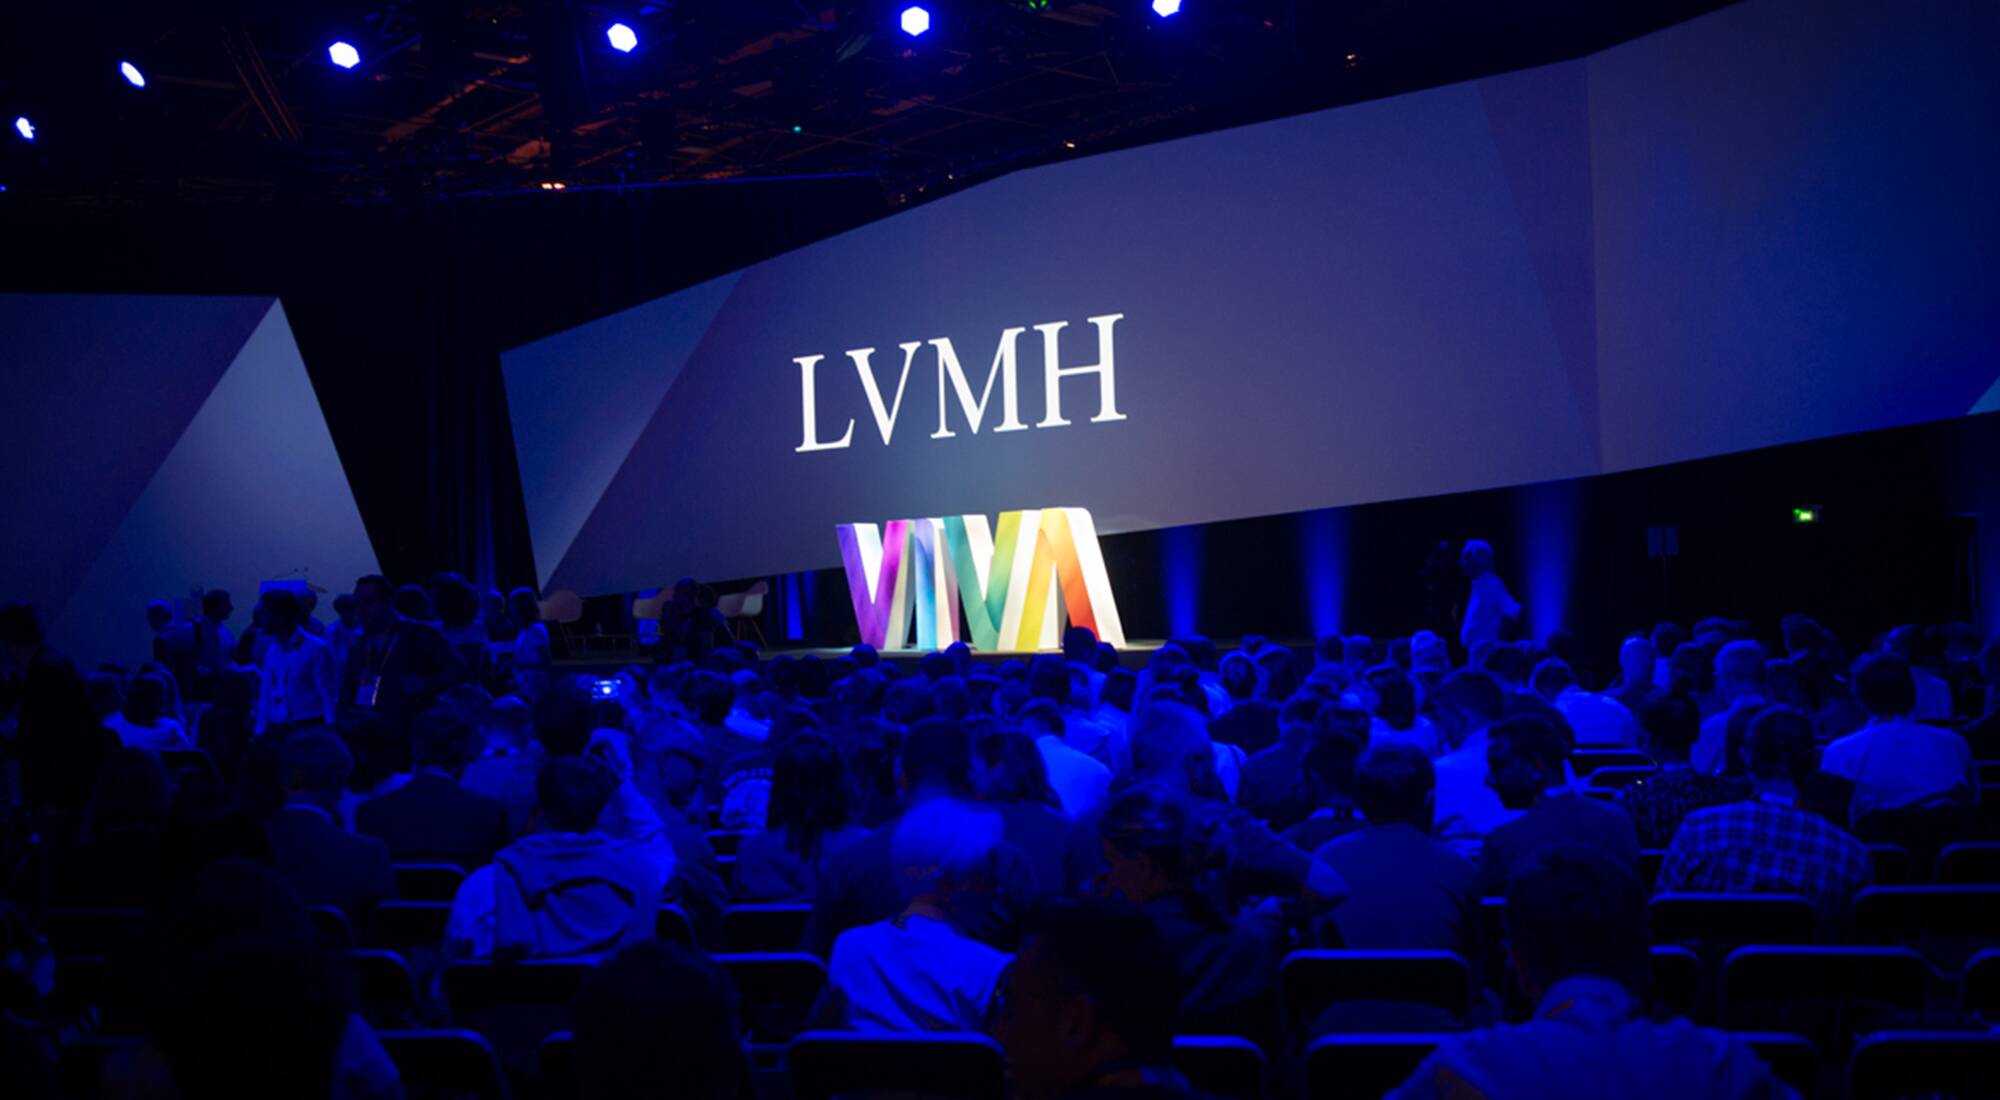 App Insights: LVMH House